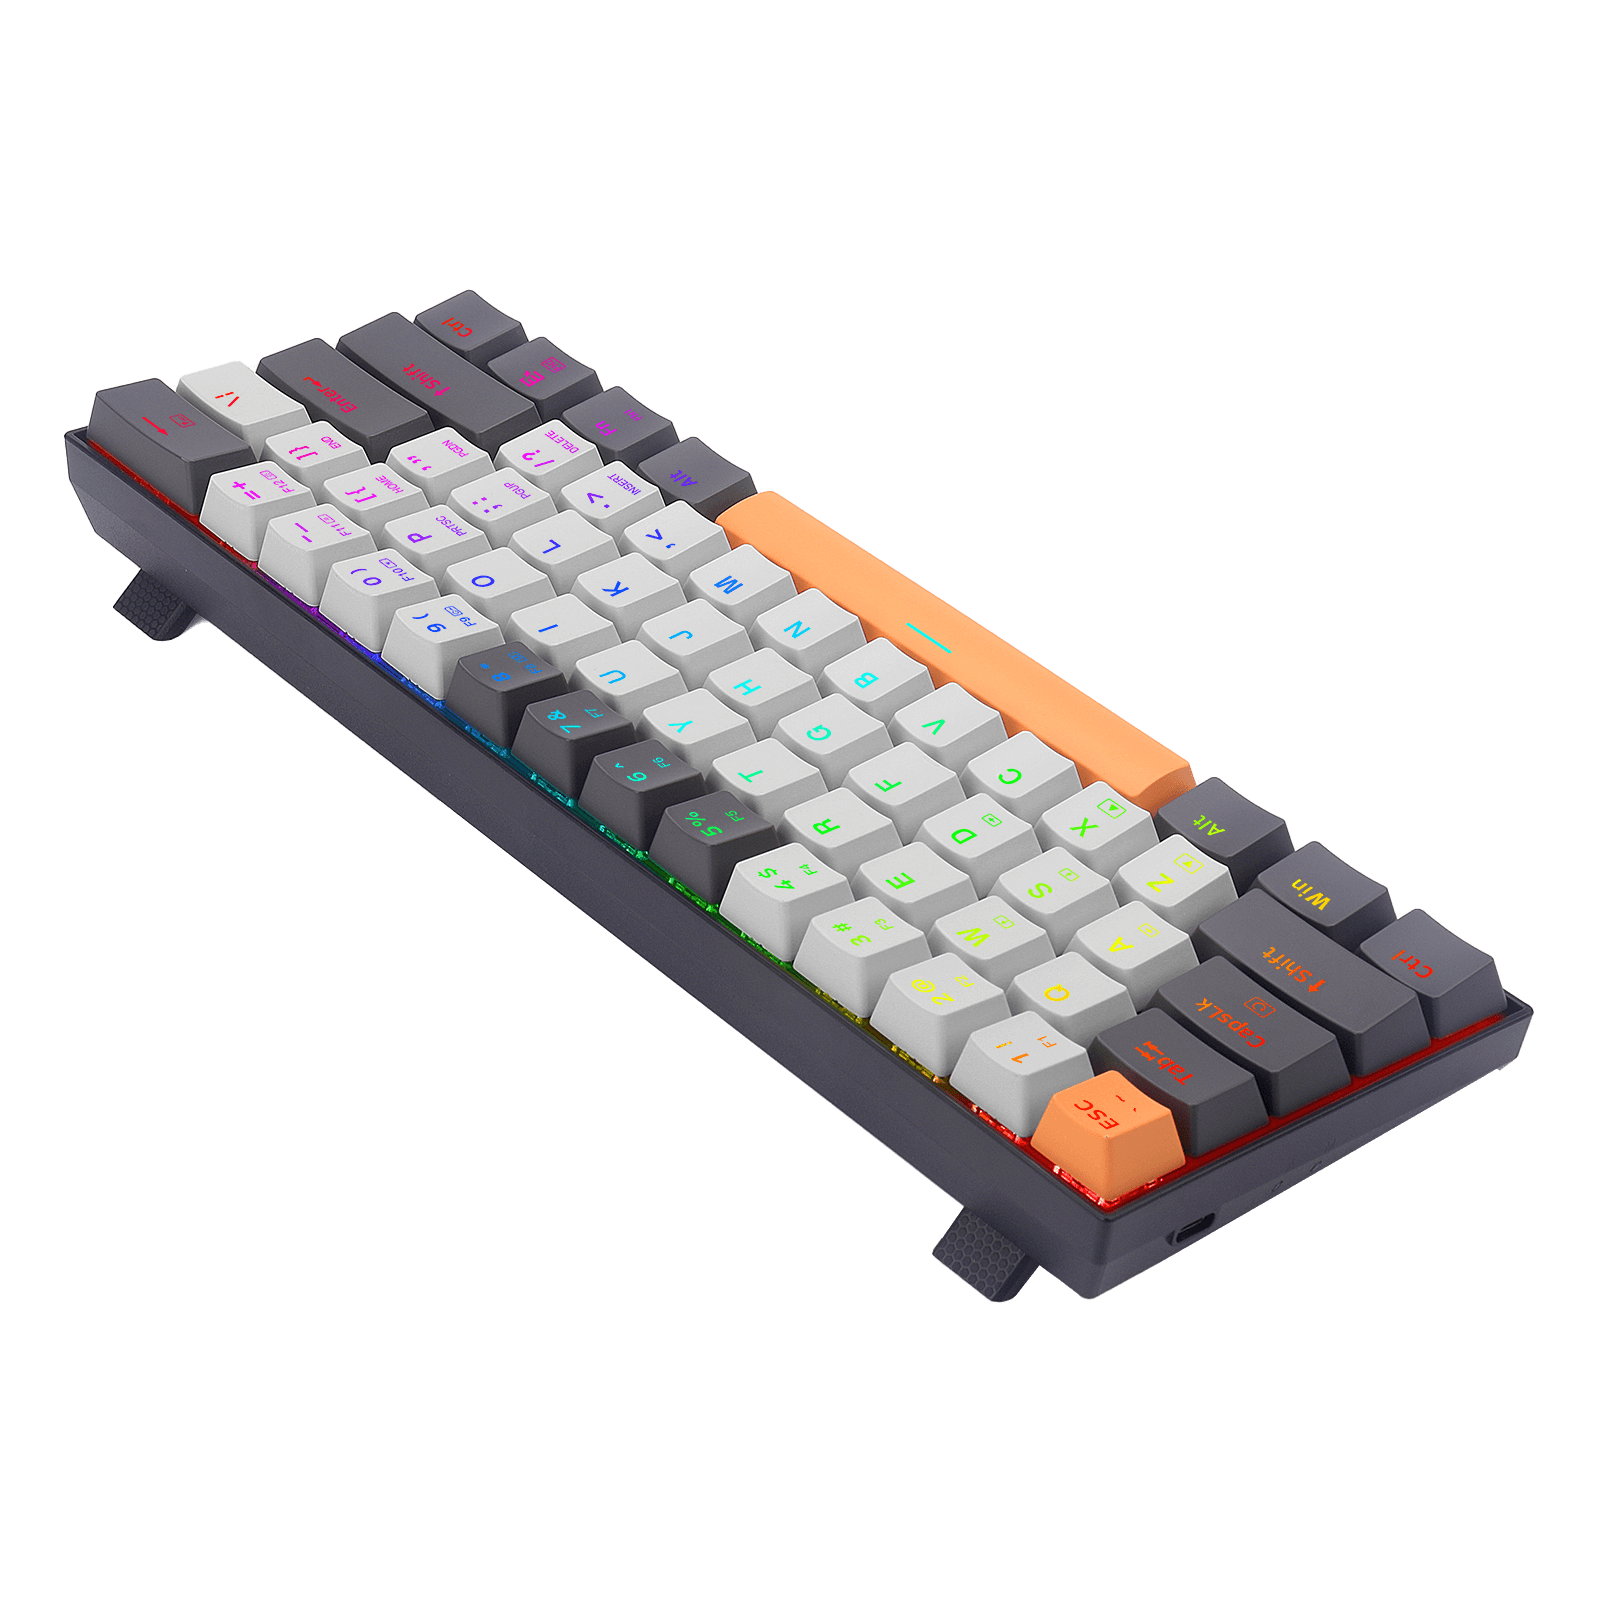 Redragon K644 SE 65% Wired RGB Gaming Keyboard